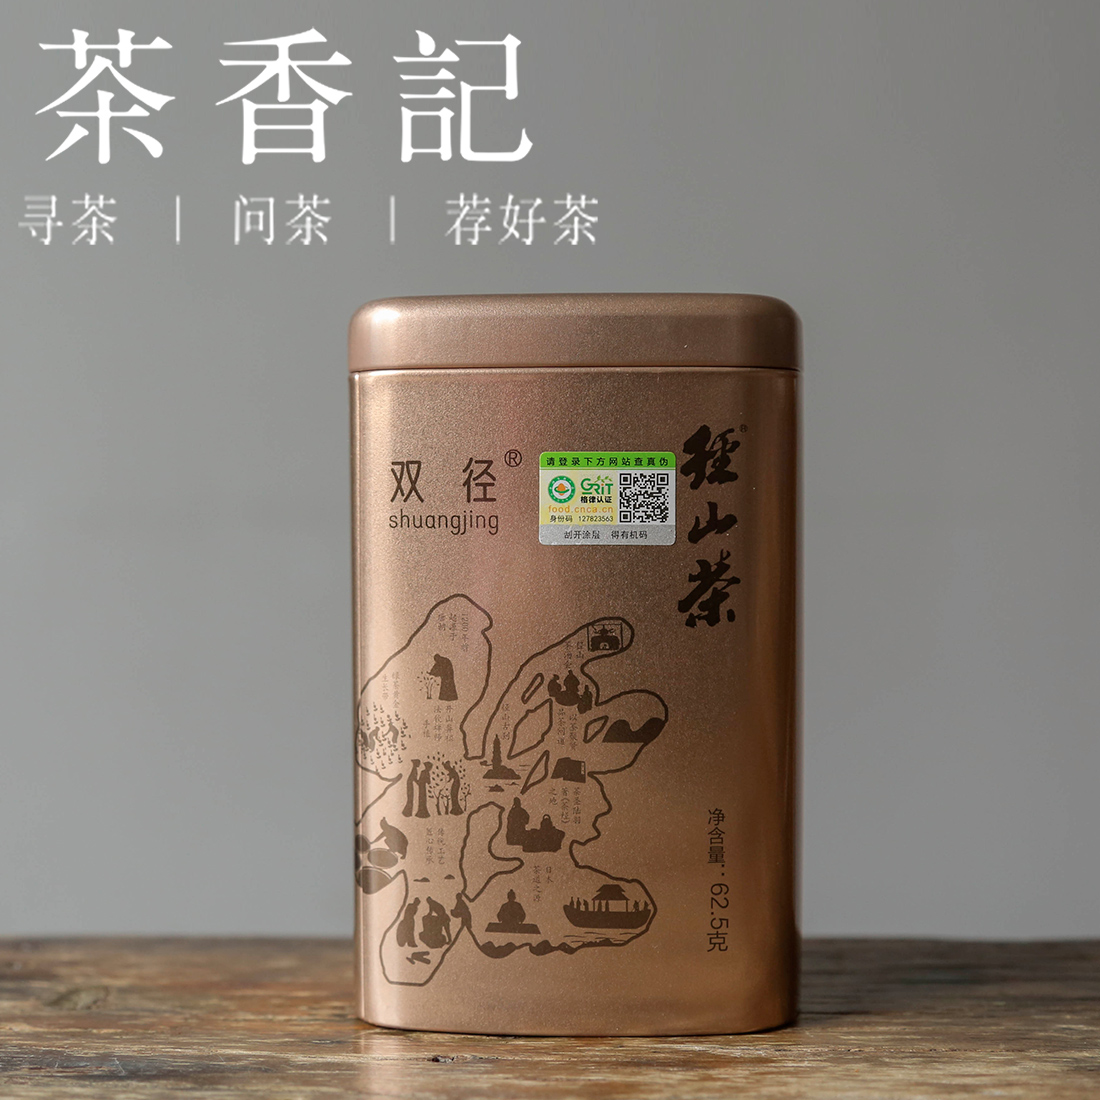 茶香记 径山茶有机绿茶24年 历史名茶 高山茶园 有机认证 香气丰富 清甜鲜醇